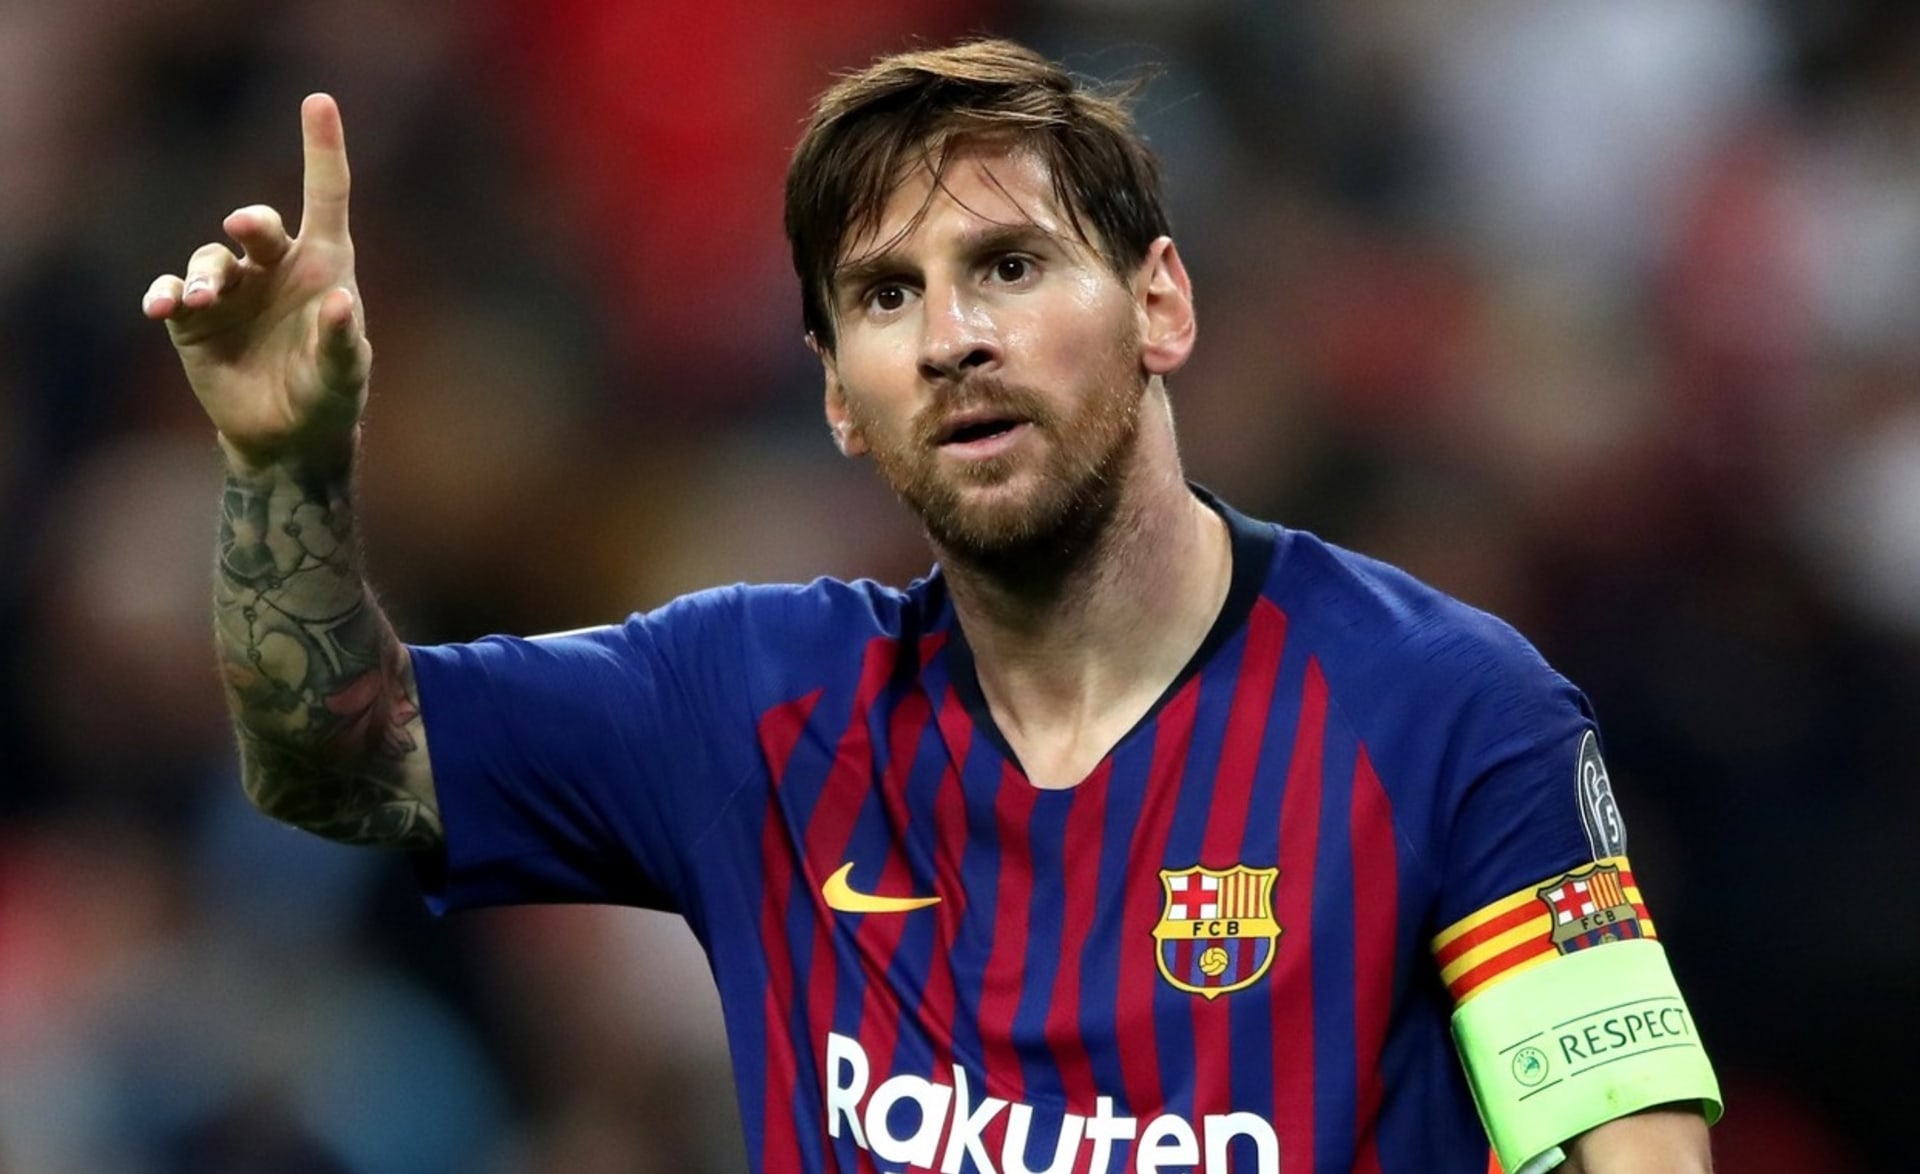 Hvězdný fotbalový útočník Lionel Messi končí v Barceloně, za kterou hrál celou kariéru.